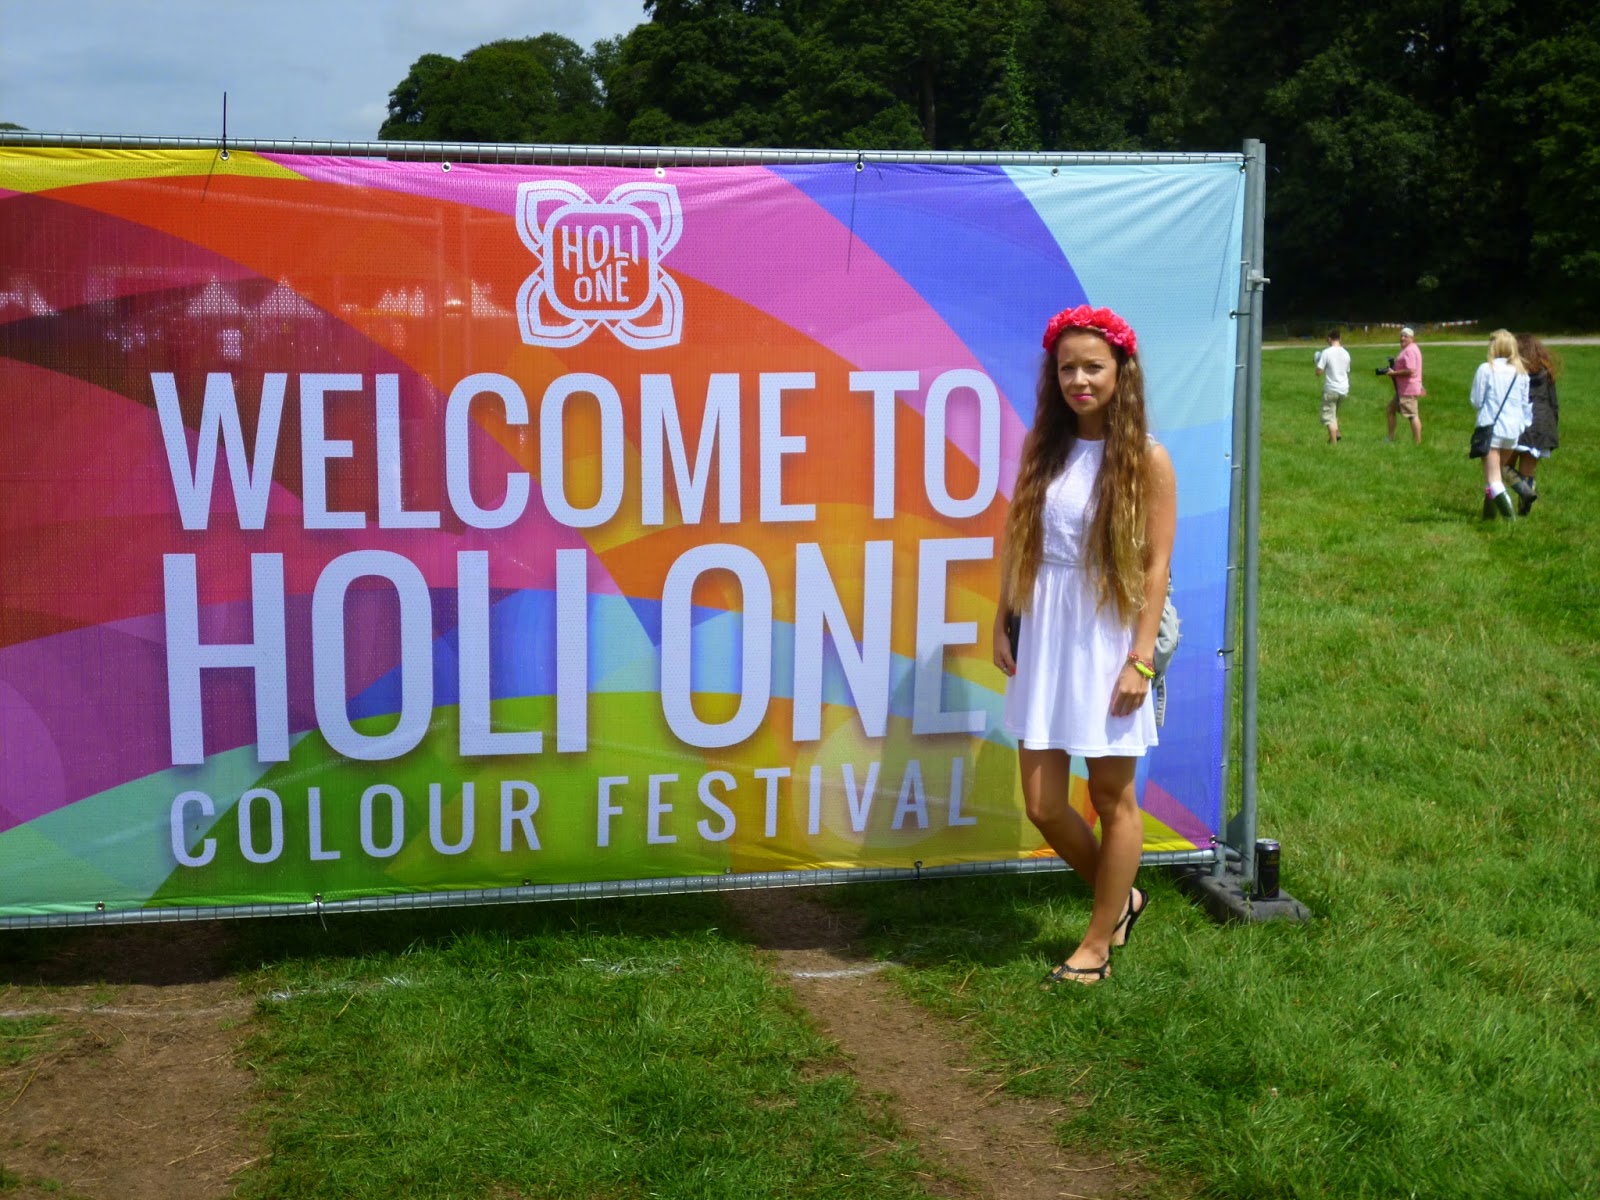 HOLI-ONE-colour-festival